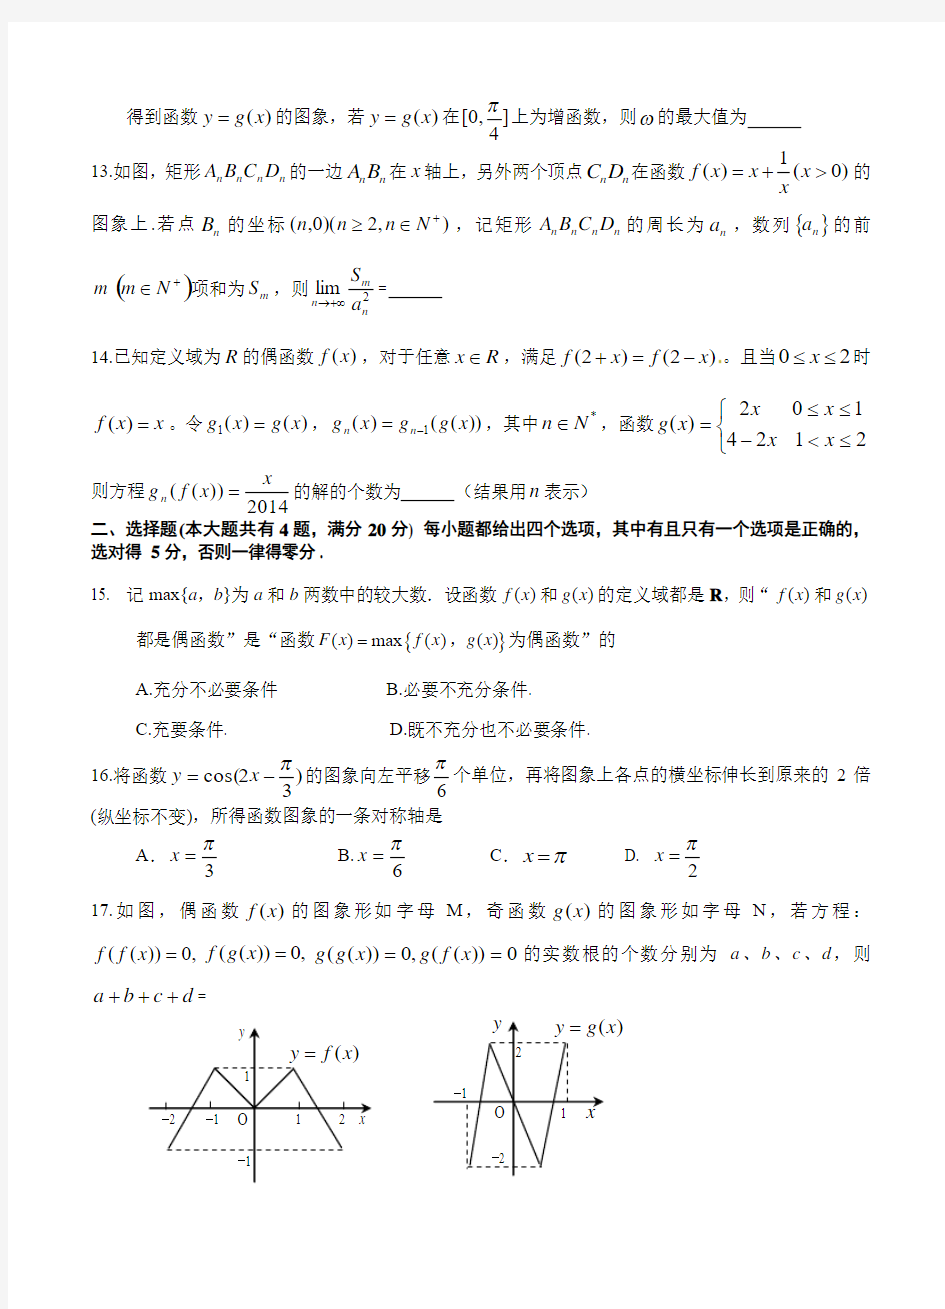 2019年上海市高三高考数学系列模拟卷(10)及答案解析